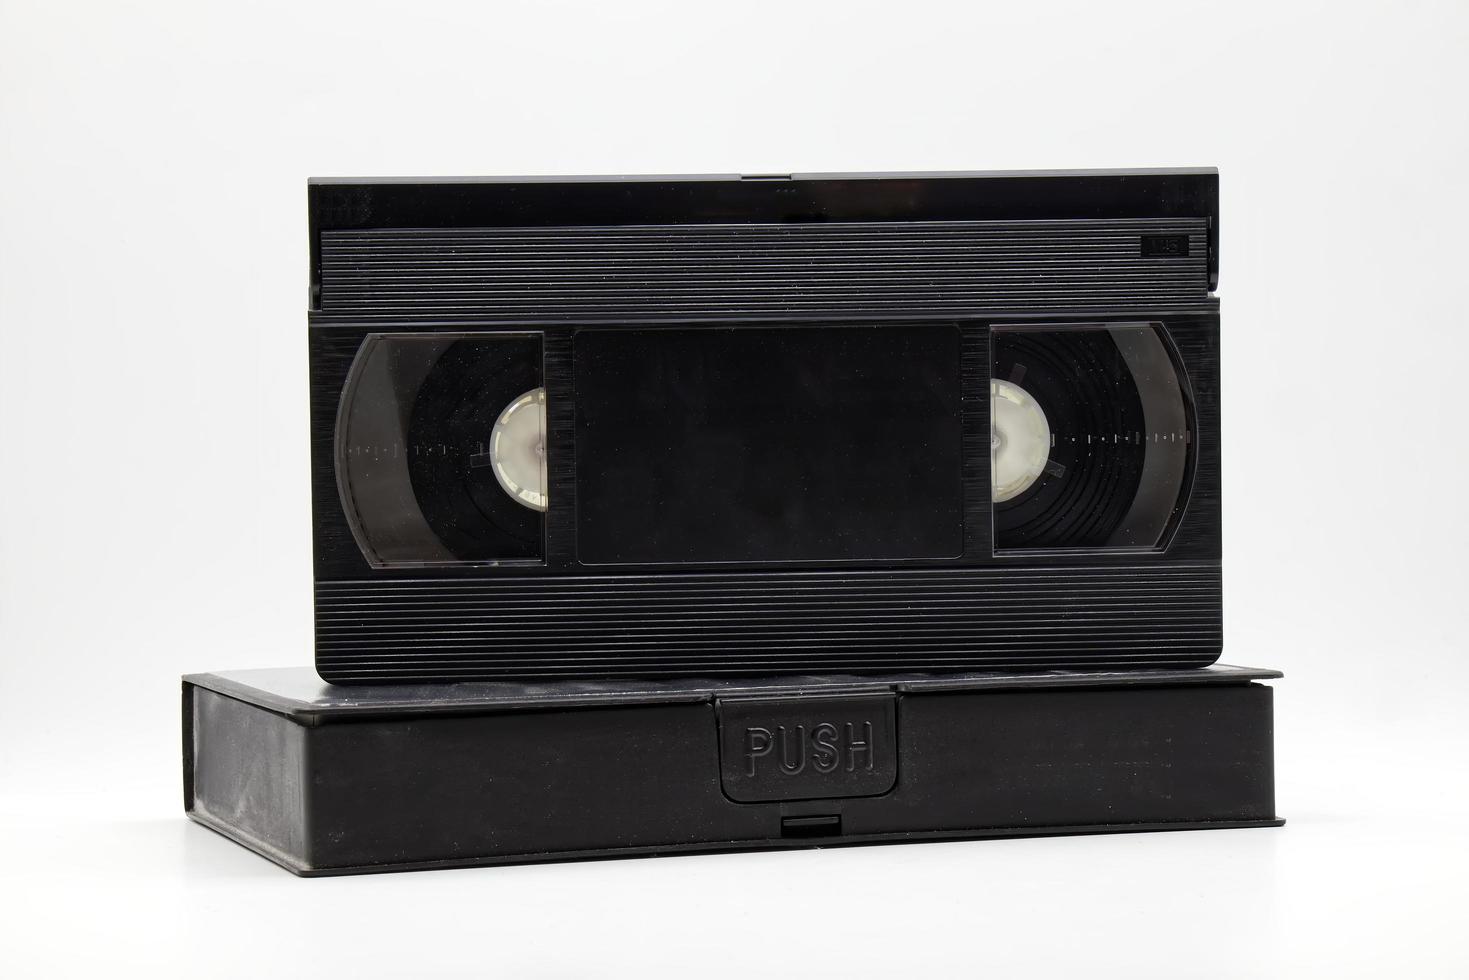 cassete de fita de vídeo vhs vintage com caixa de cassete de plástico. tecnologia de estilo retrô dos anos 90 foto